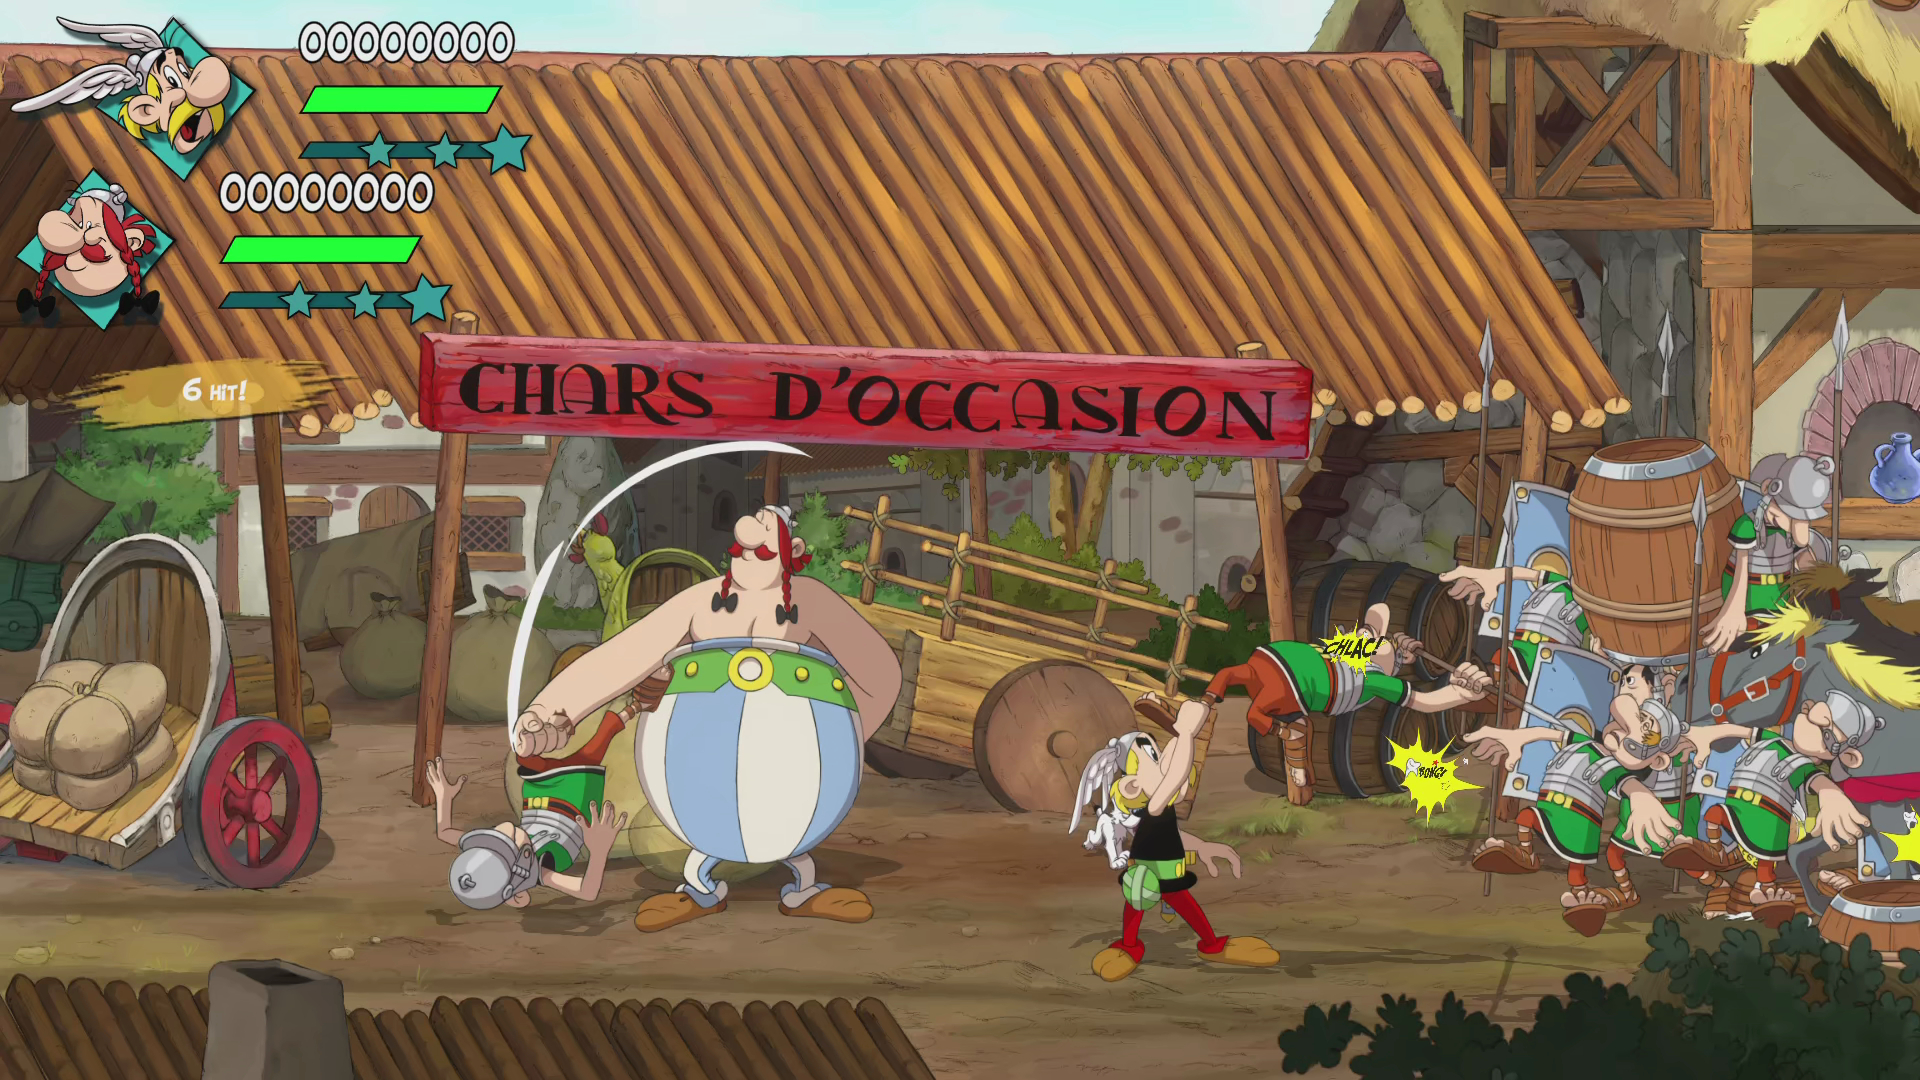 - & - all! [PlayStation them 2 Asterix Obelix Slap 5]